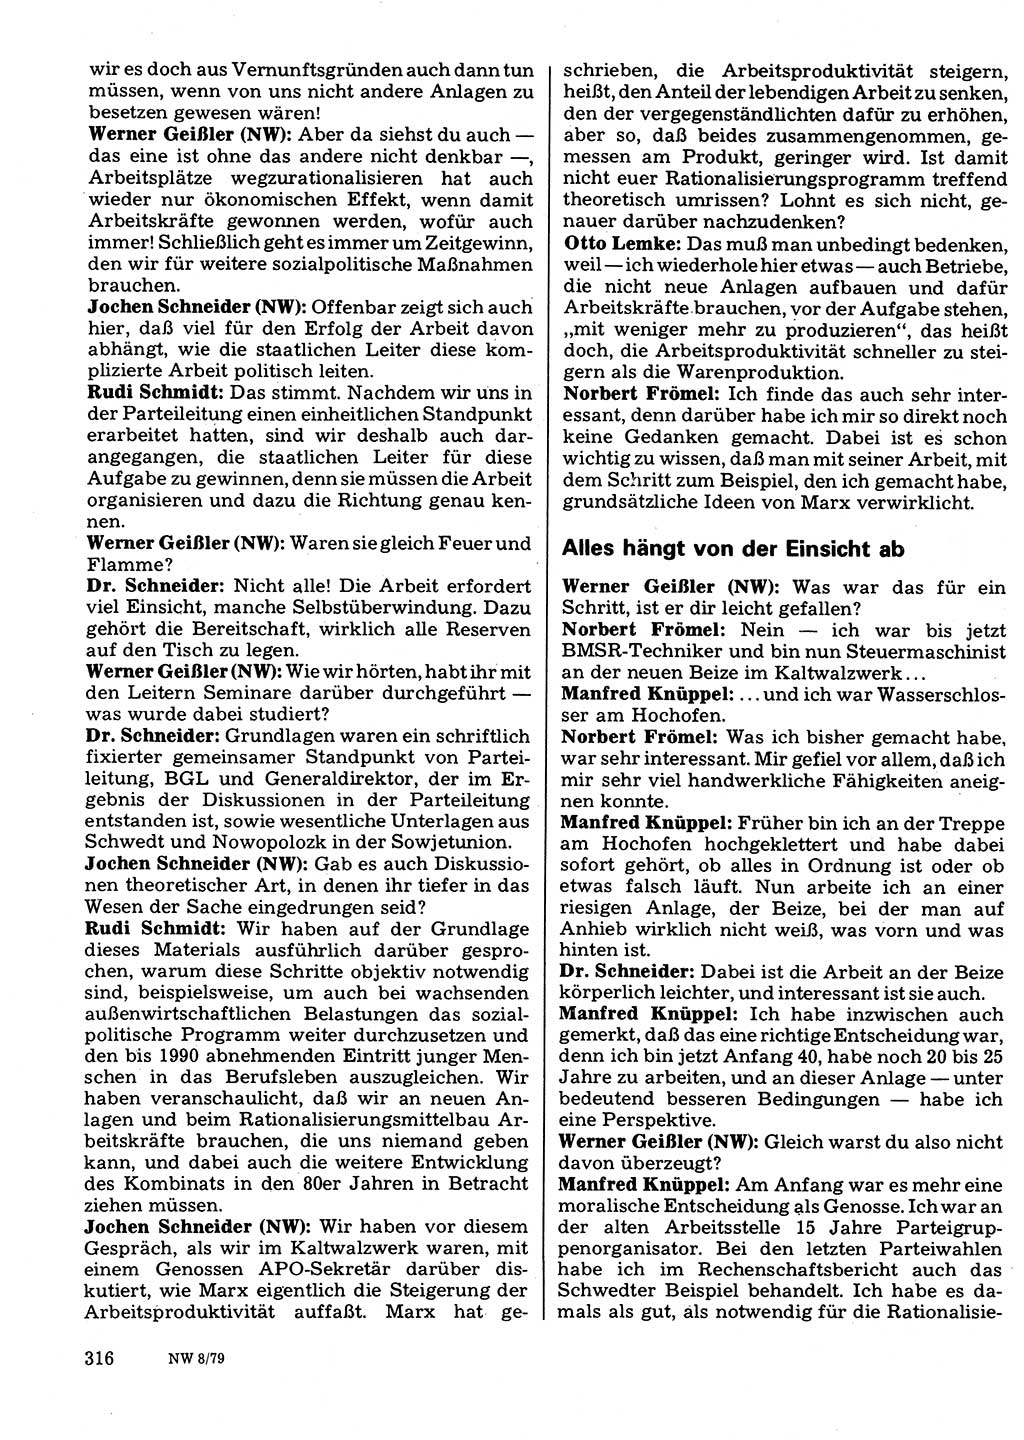 Neuer Weg (NW), Organ des Zentralkomitees (ZK) der SED (Sozialistische Einheitspartei Deutschlands) für Fragen des Parteilebens, 34. Jahrgang [Deutsche Demokratische Republik (DDR)] 1979, Seite 316 (NW ZK SED DDR 1979, S. 316)